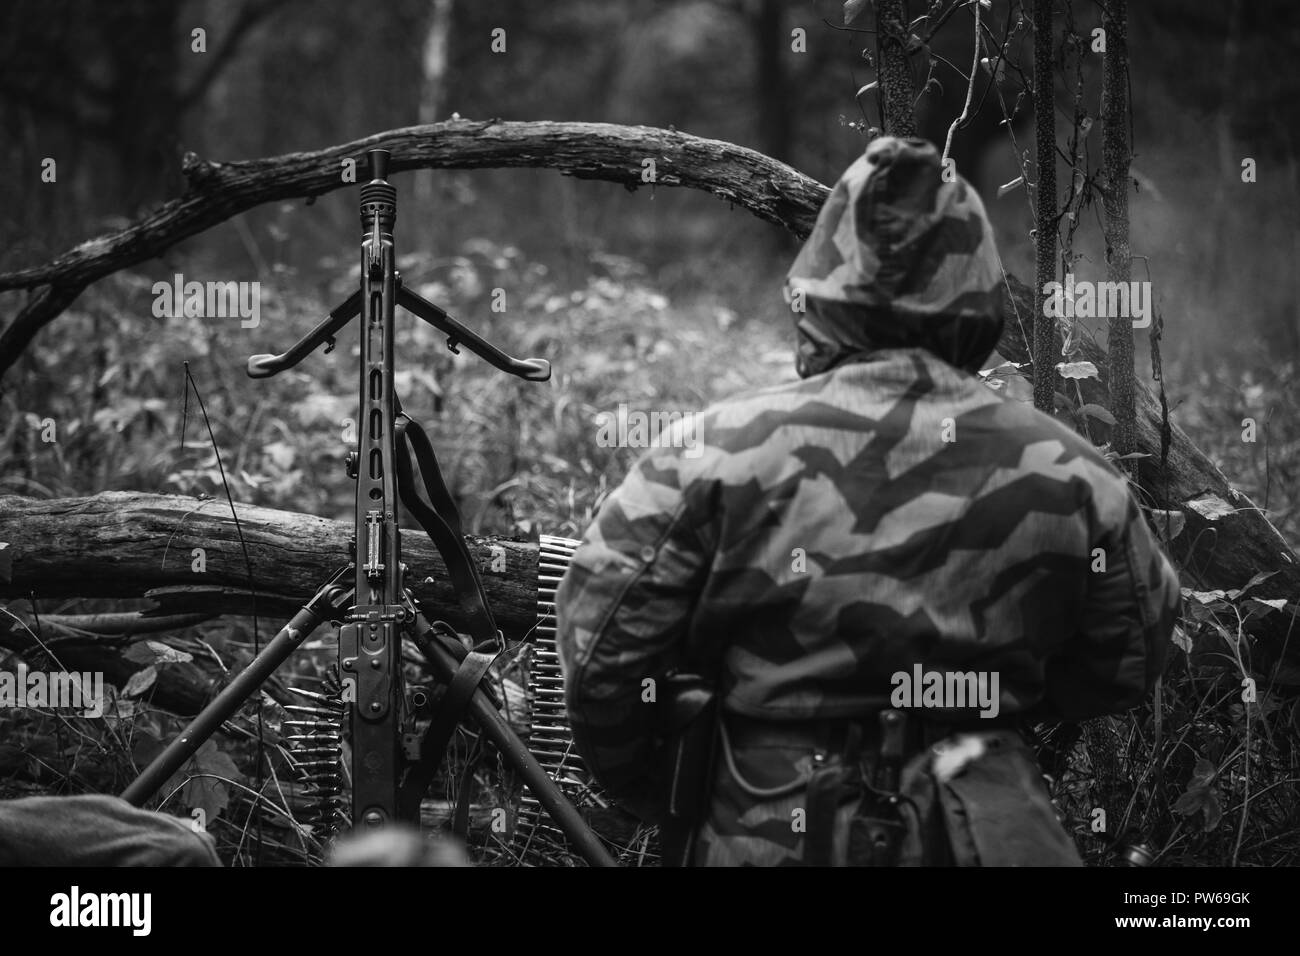 Non cachés de la reconstitution médiévale habillé en soldat de la Wehrmacht allemande assis avec une mitrailleuse dans une embuscade dans la forêt. Photo en noir et blanc. Banque D'Images